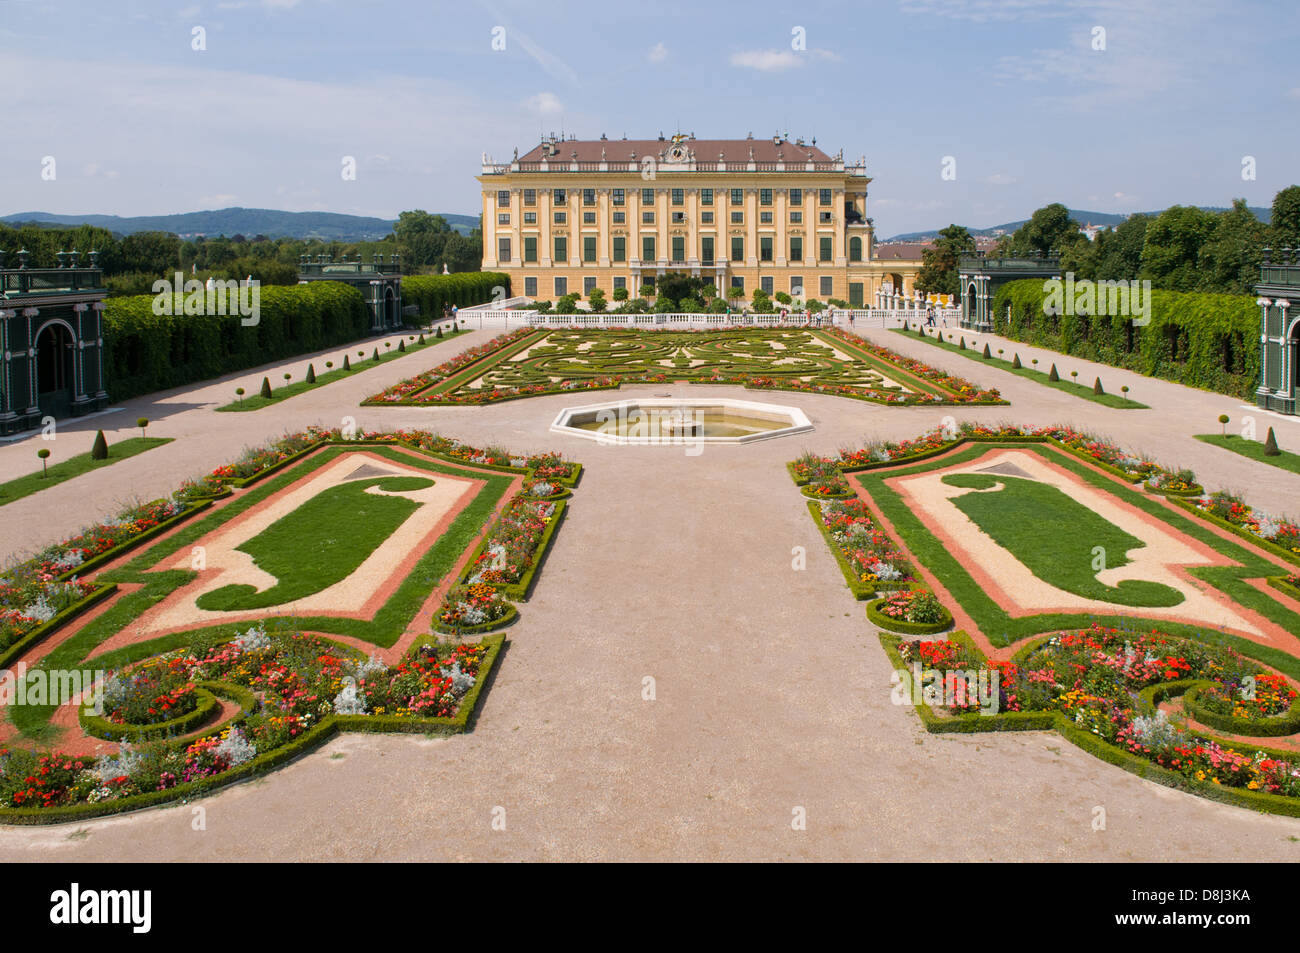 Privy Garden at Palace of Schonbrunn, Vienna, Austria Stock Photo